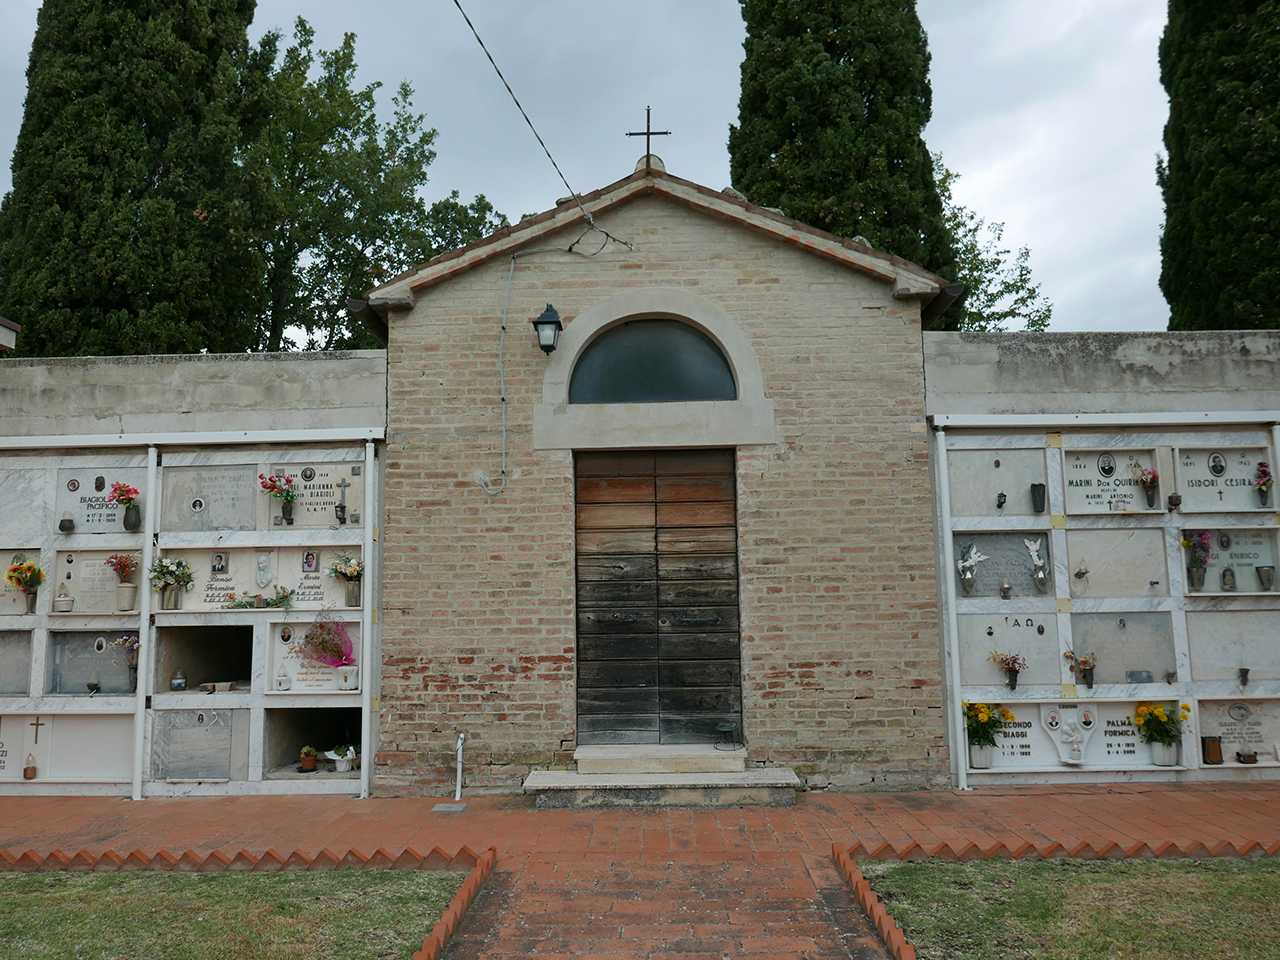 Cimitero di San Costanzo (cimitero, rurale) - San Ginesio (MC)  (XX, inizio)